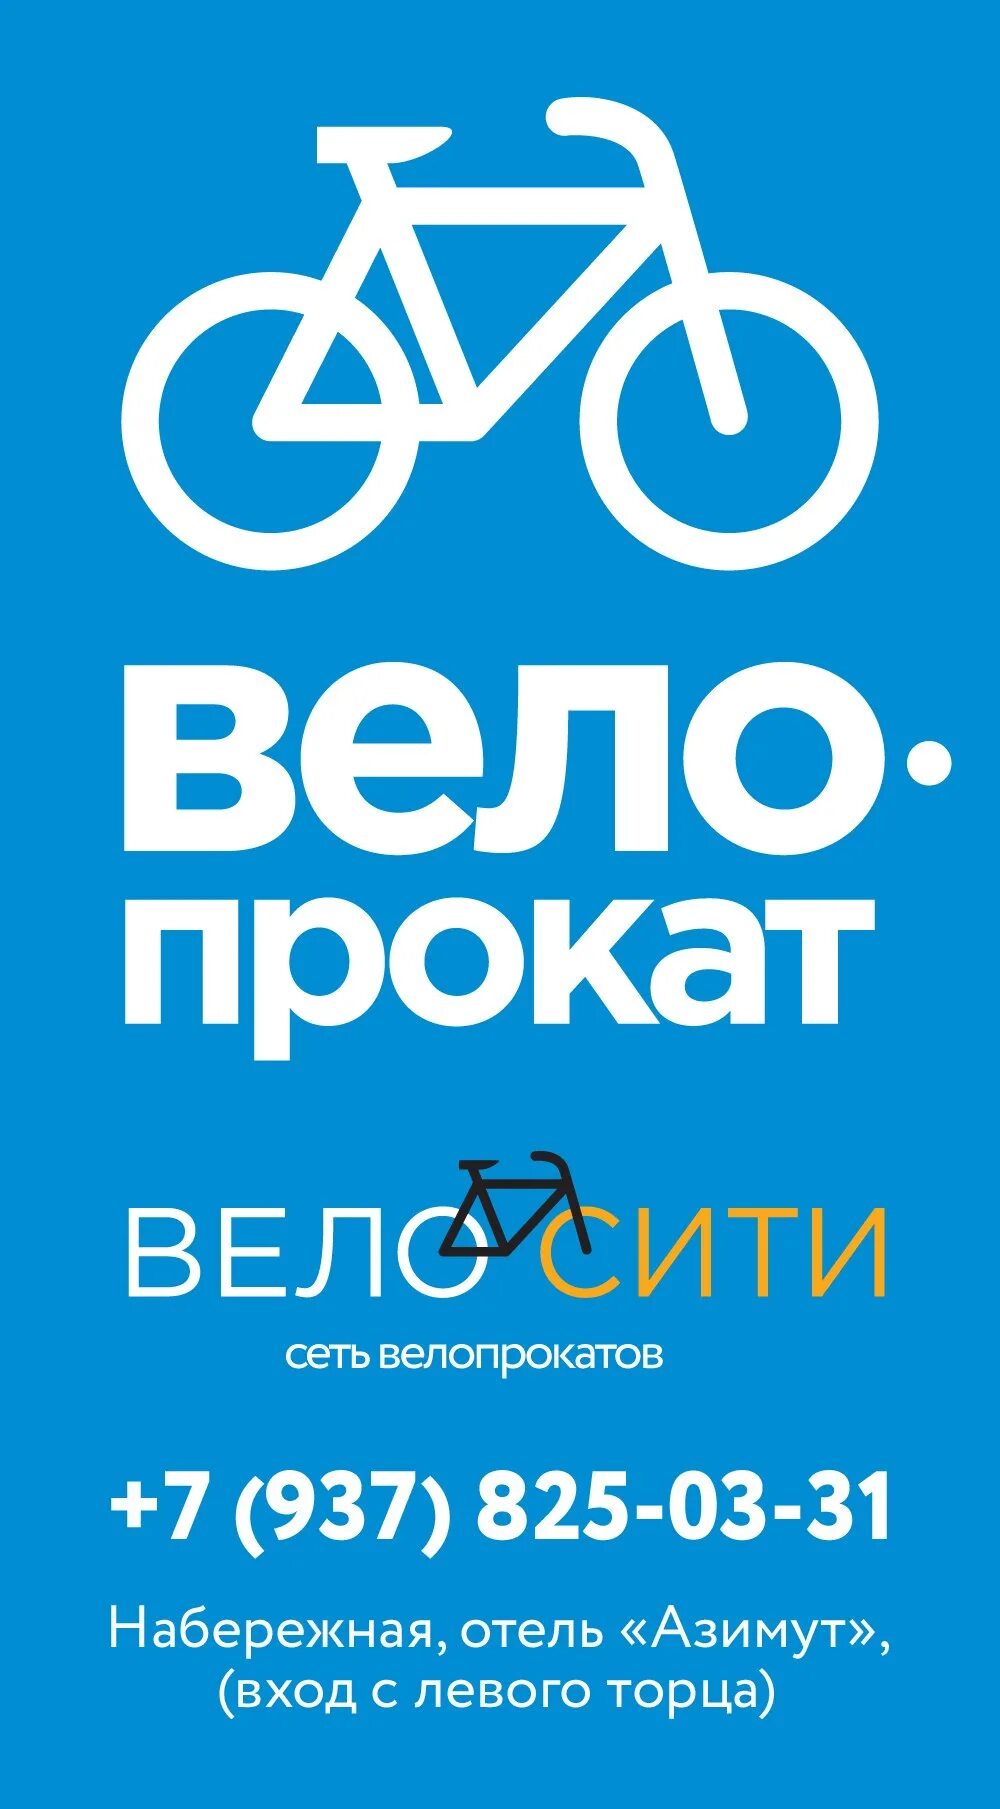 Реклама проката. Велопрокат реклама. Прокат велосипедов реклама. Баннер велопрокат. Реклама велопроката.